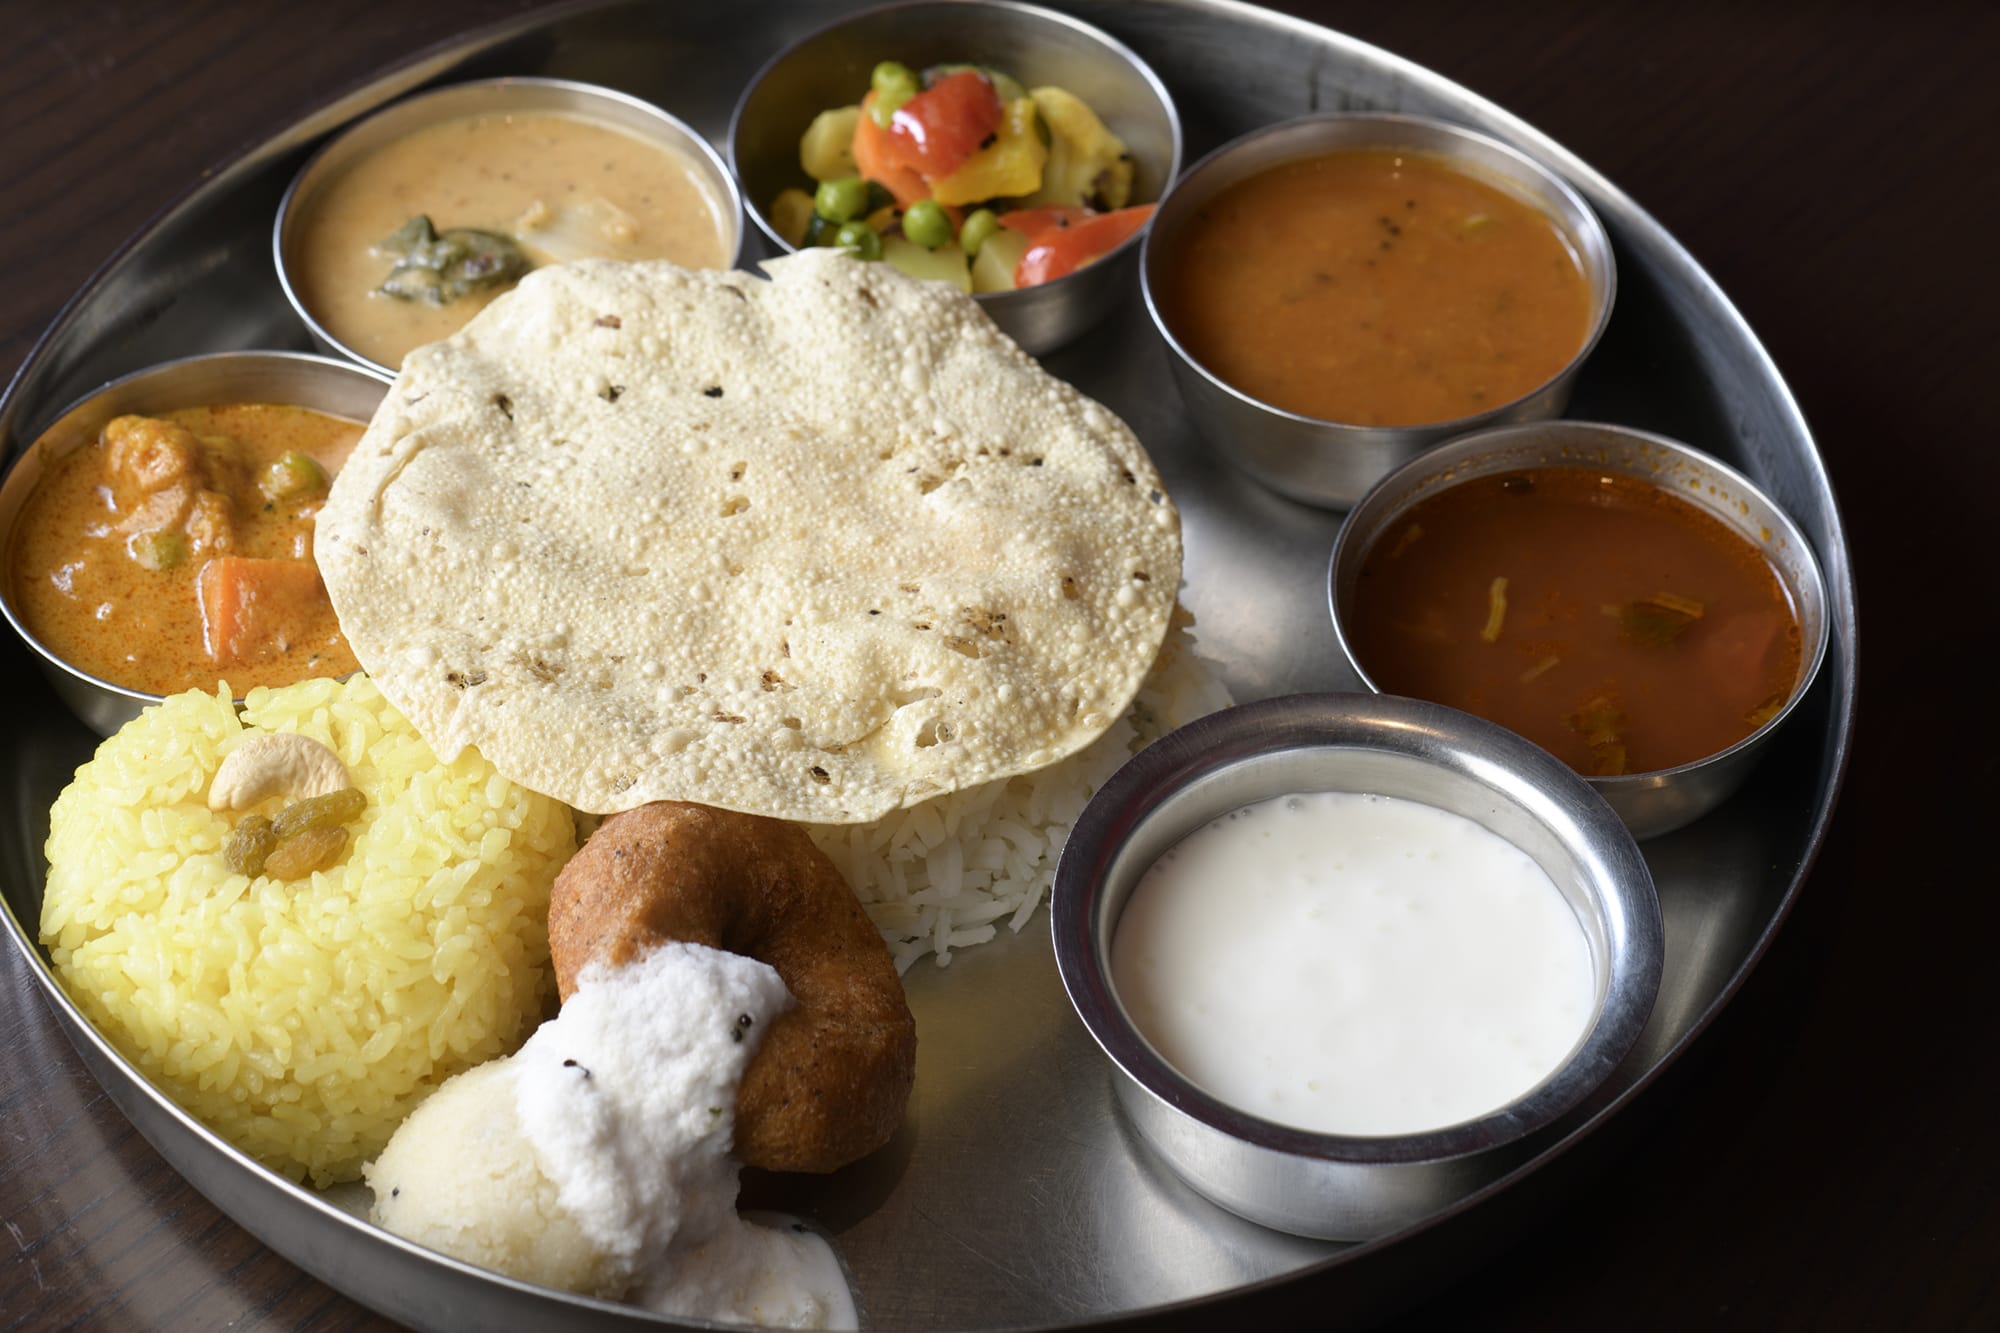 バリエーション豊かな南インド料理がワンプレートになった「ミールス」。